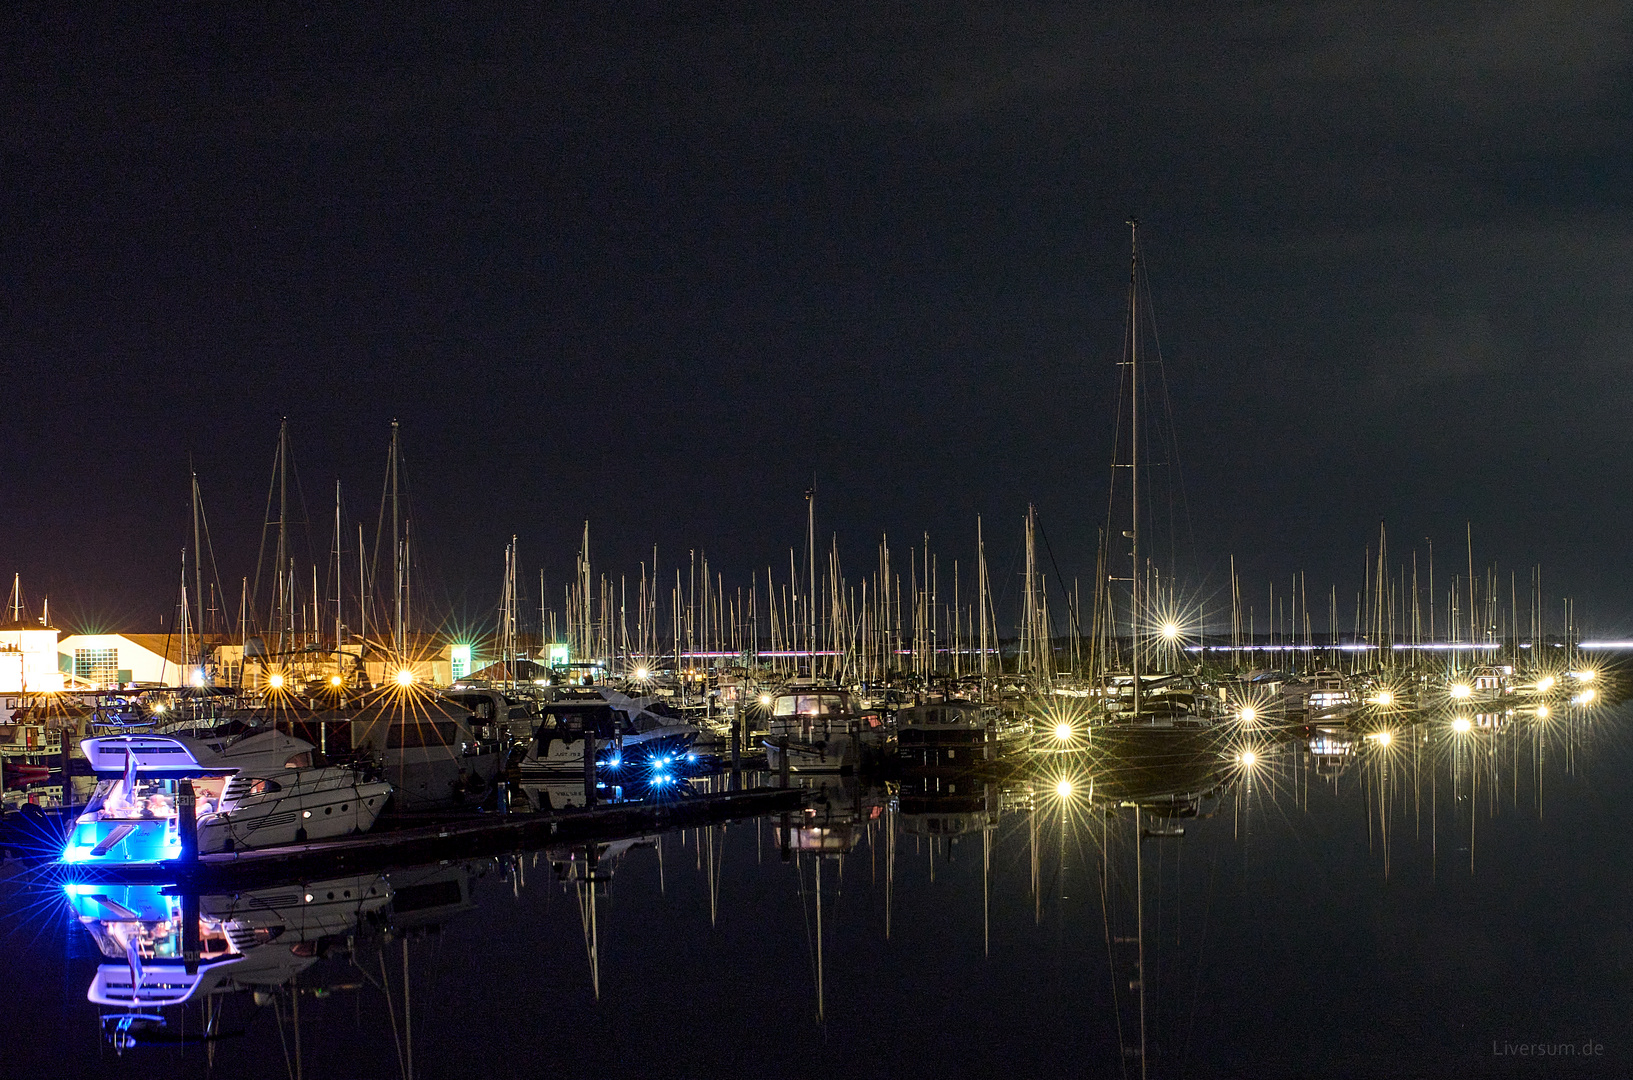 Lichteffekte im nächtlichen Yachthafen